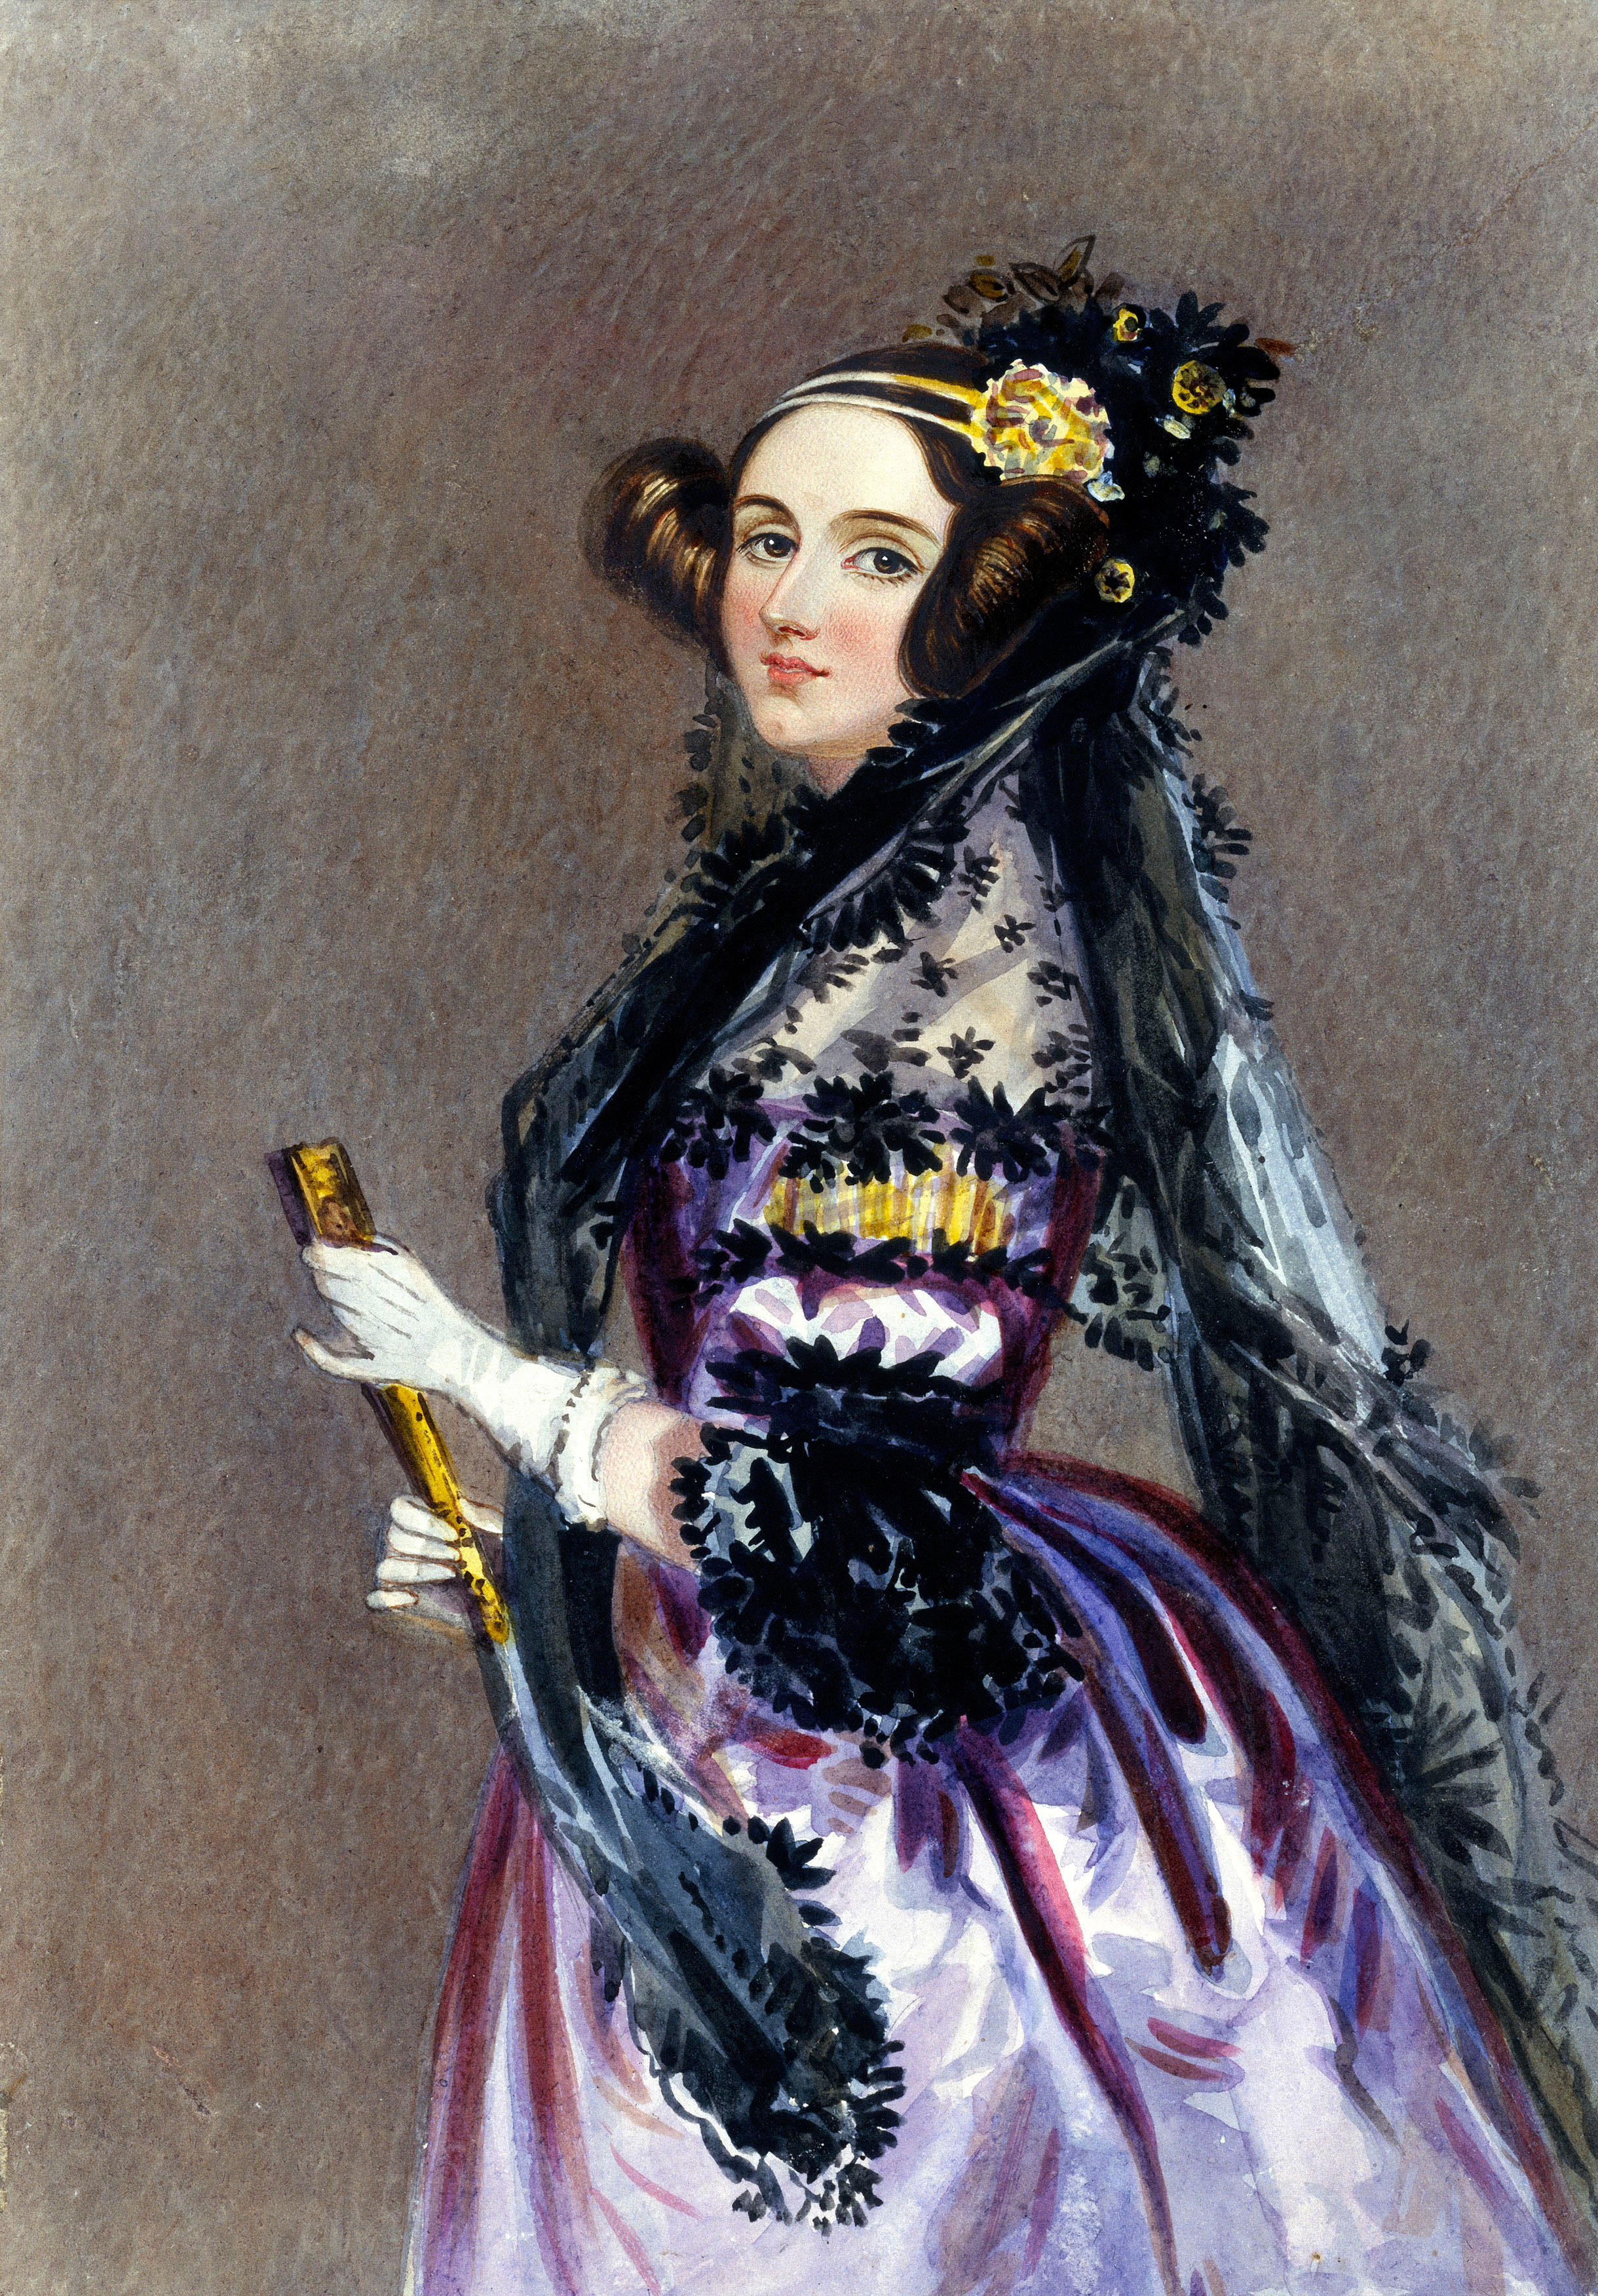 Ada Lovelace portrait